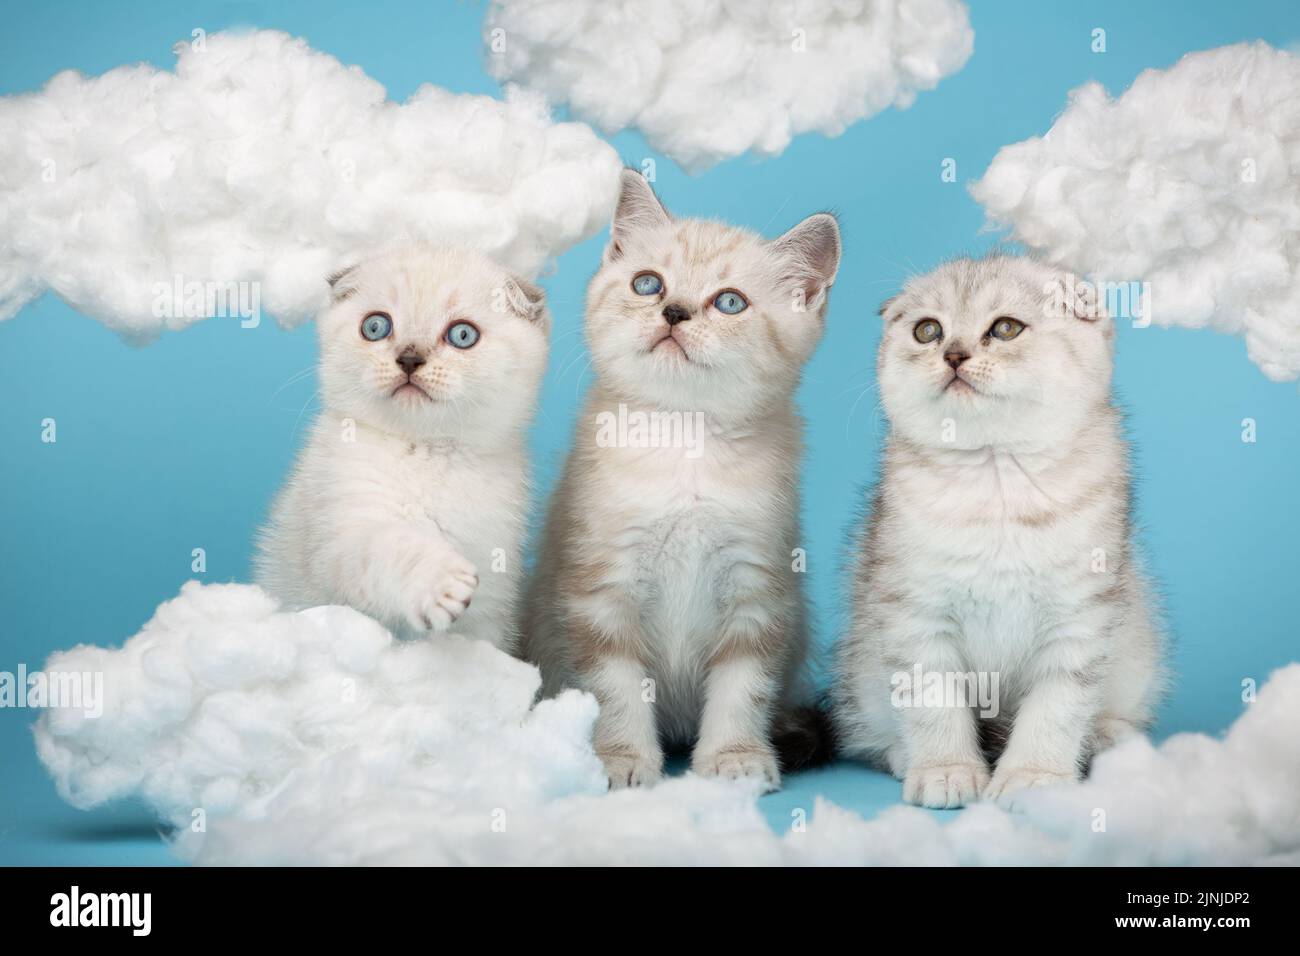 Schottisch-hellgrau gestreifte Kätzchen hoben ihre Köpfe hoch und schauten mit weißen, flauschigen Wolken gegen den Himmel. Porträt von reinrassigen Katzen. Fotosammlung Stockfoto